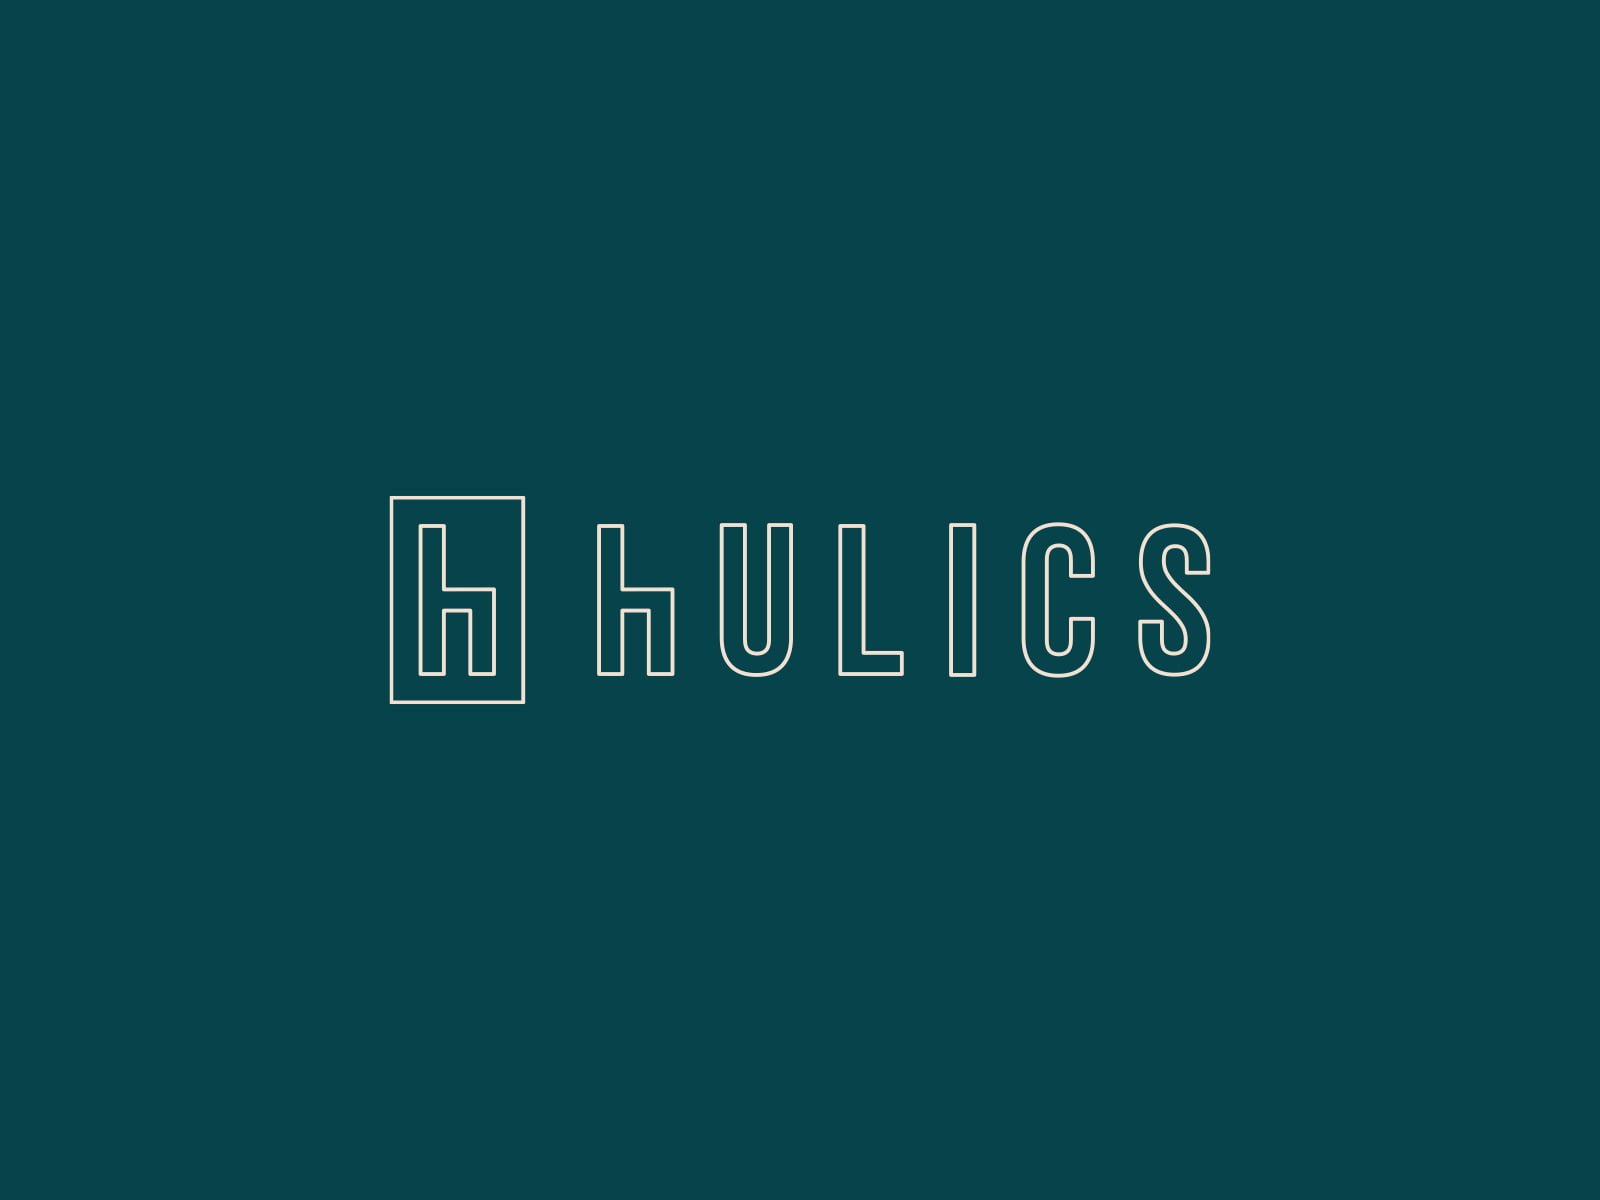 hulics logo